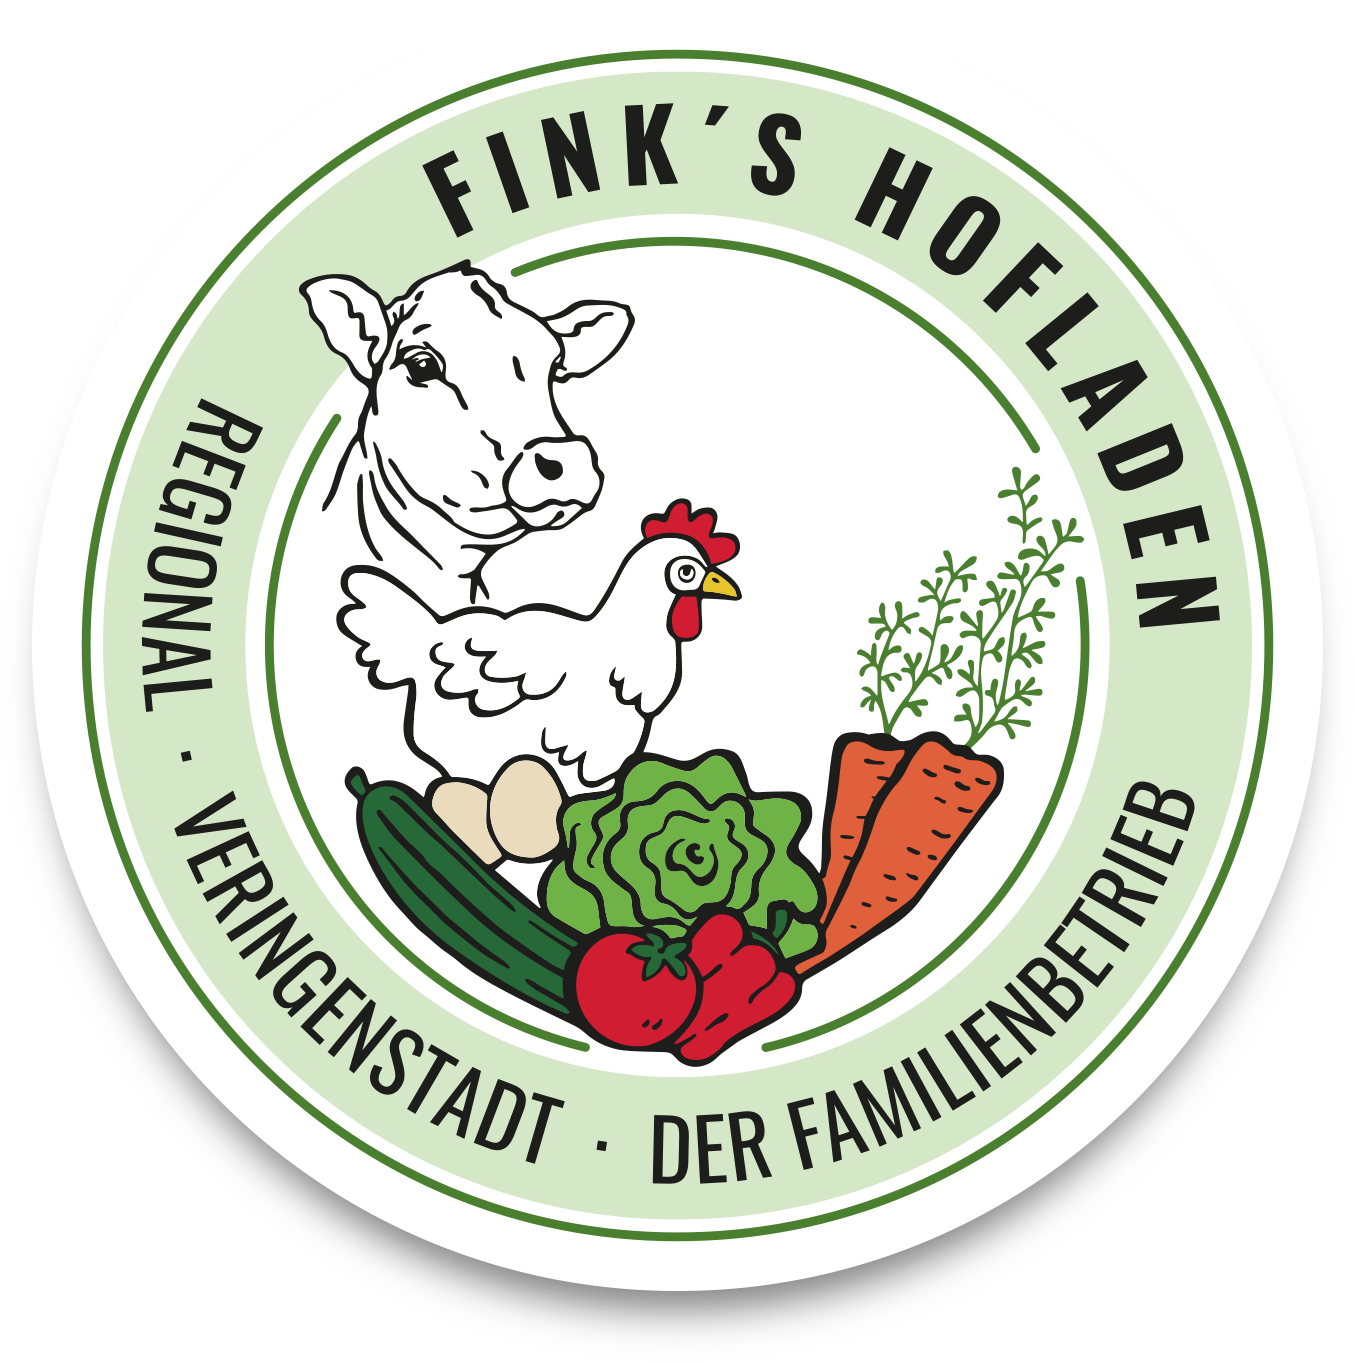 Fink's Hofladen